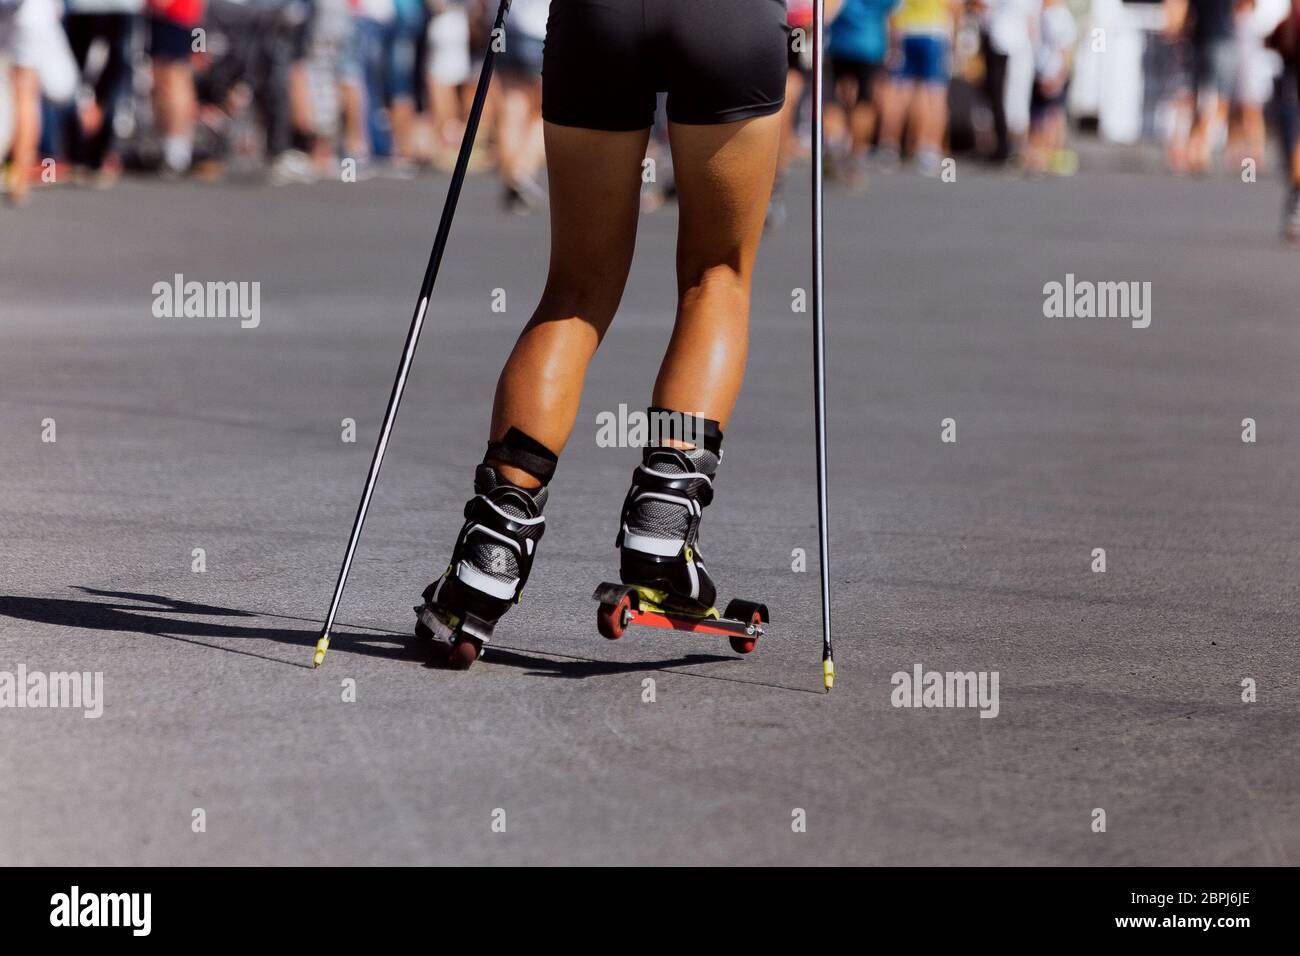 back girl skier roller skiing race on asphalt Stock Photo